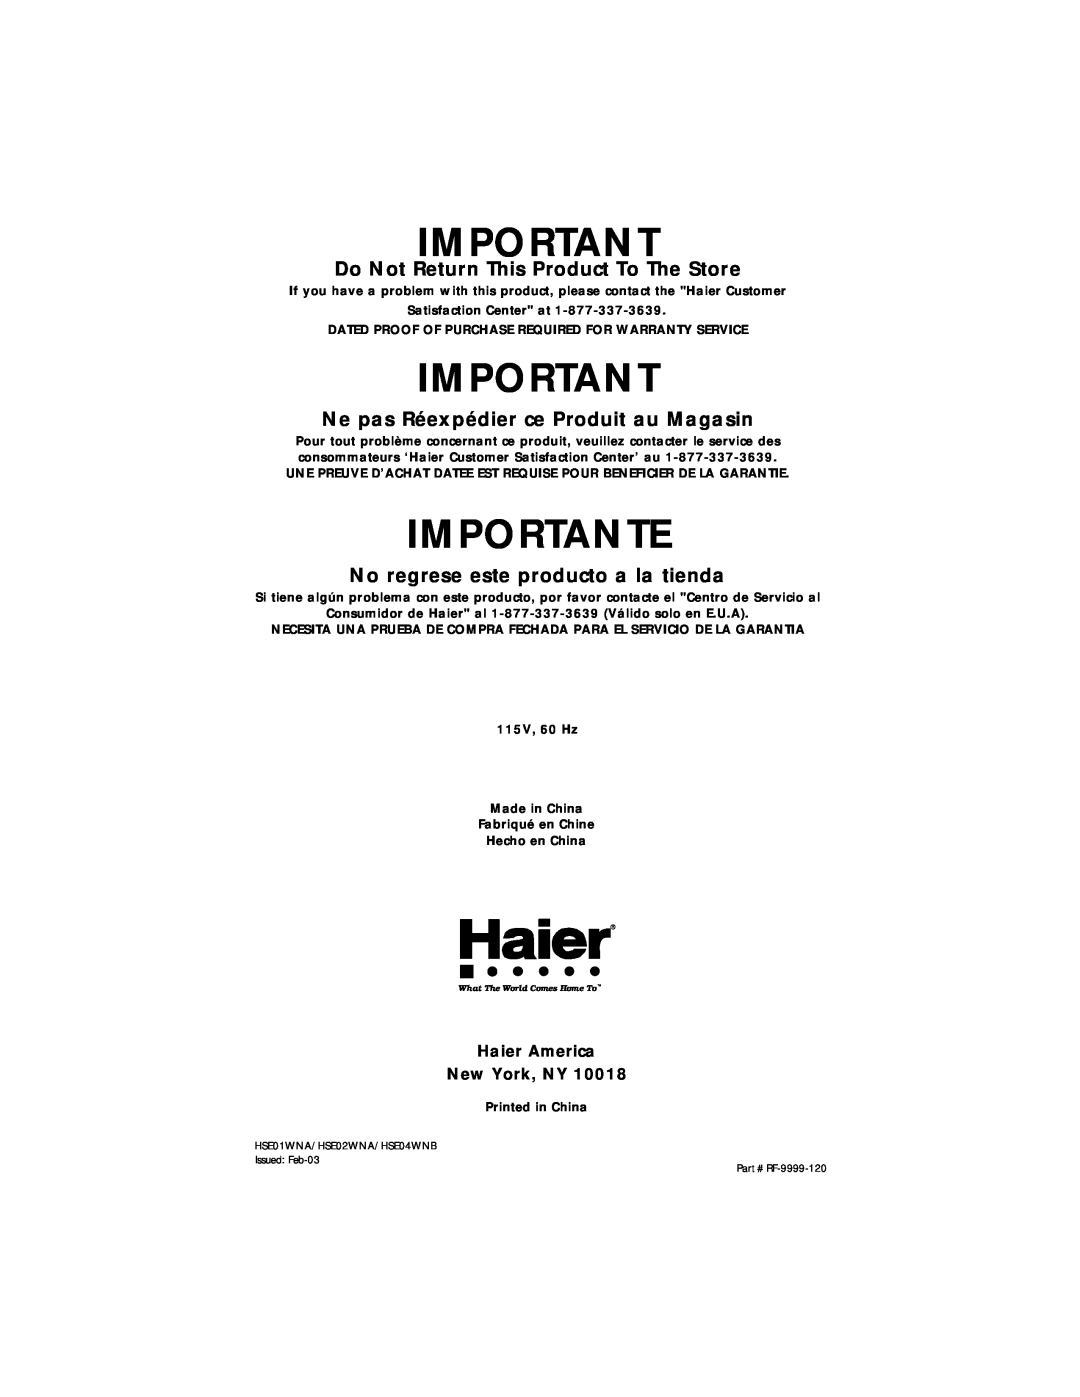 Haier HSE01WNA user manual Importante, Do Not Return This Product To The Store, Ne pas Réexpédier ce Produit au Magasin 